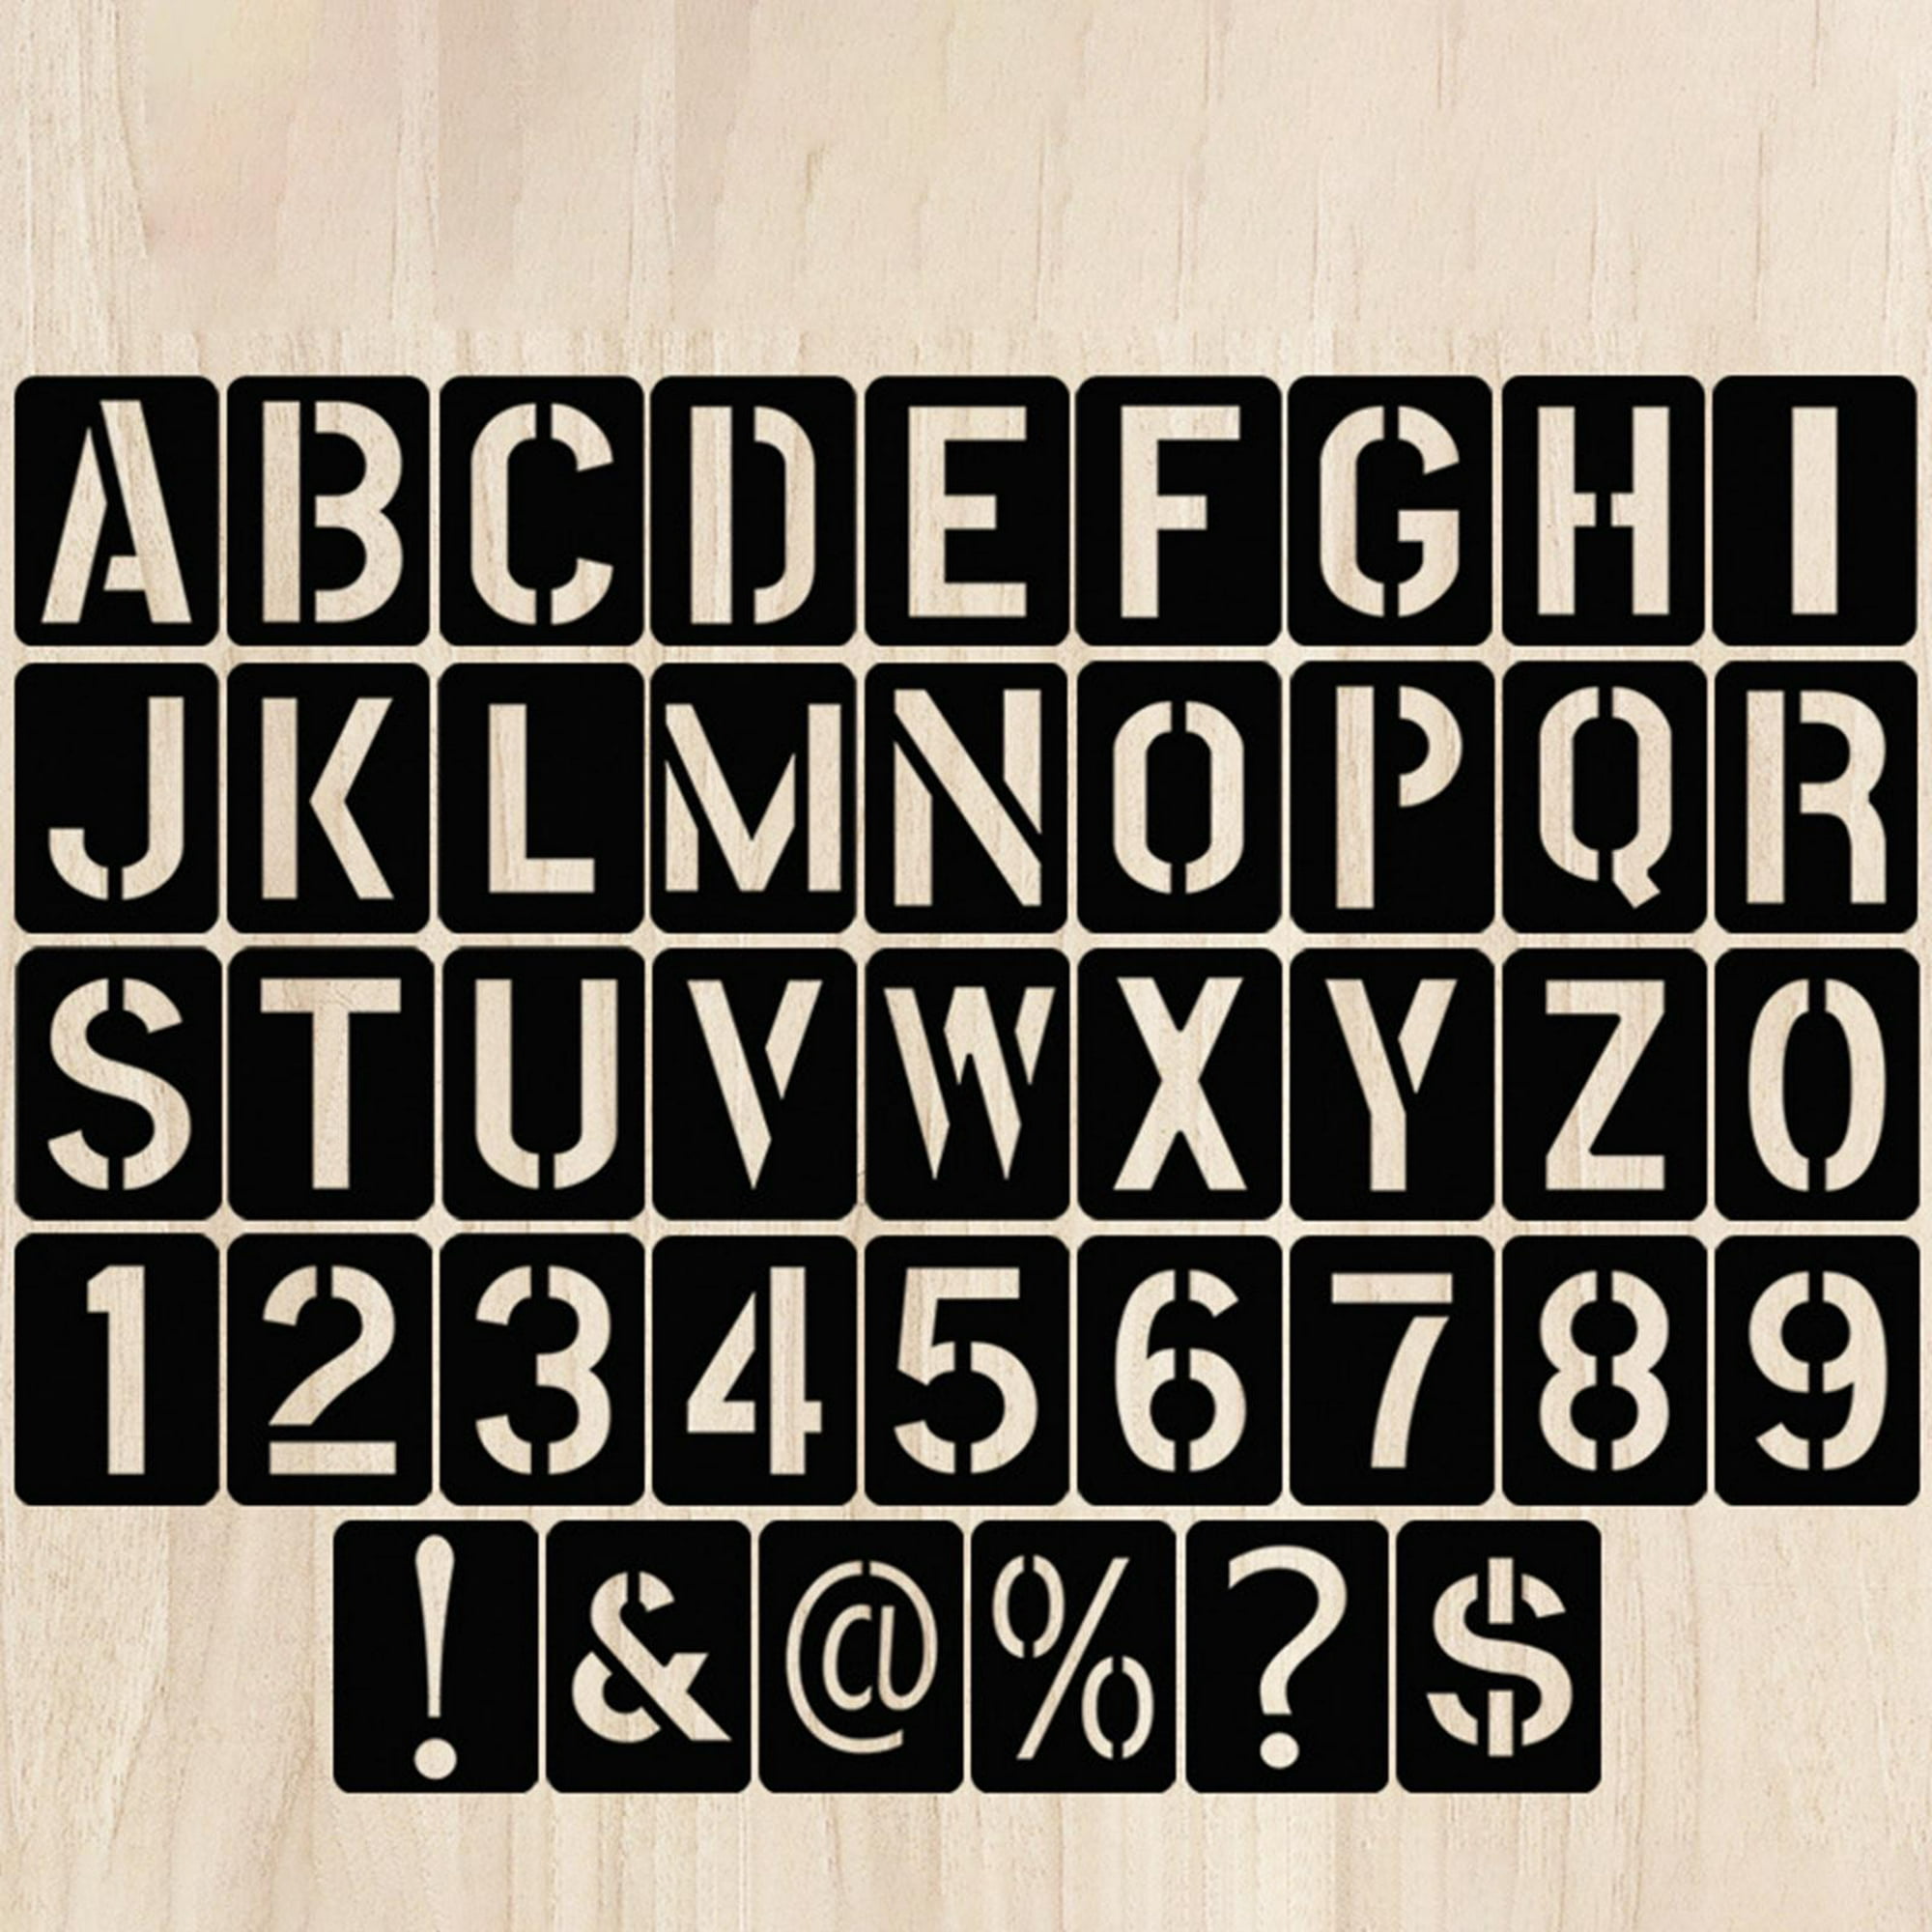 10 Uds plantillas de alfabeto reutilizables juego de plantillas de